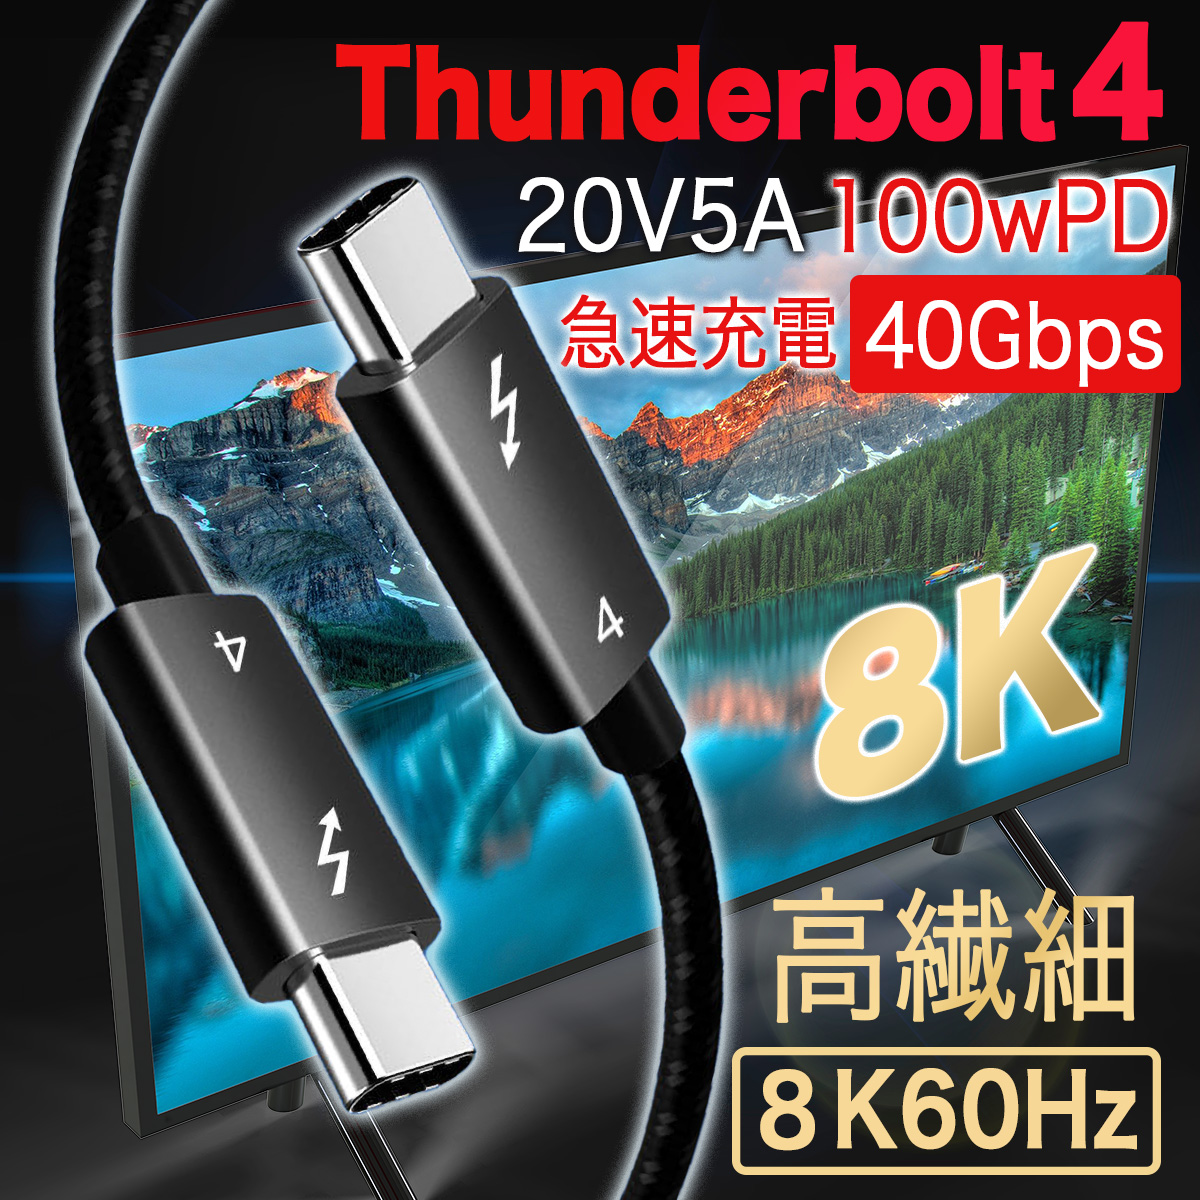 Thunderbolt4 20V5A 100wPD